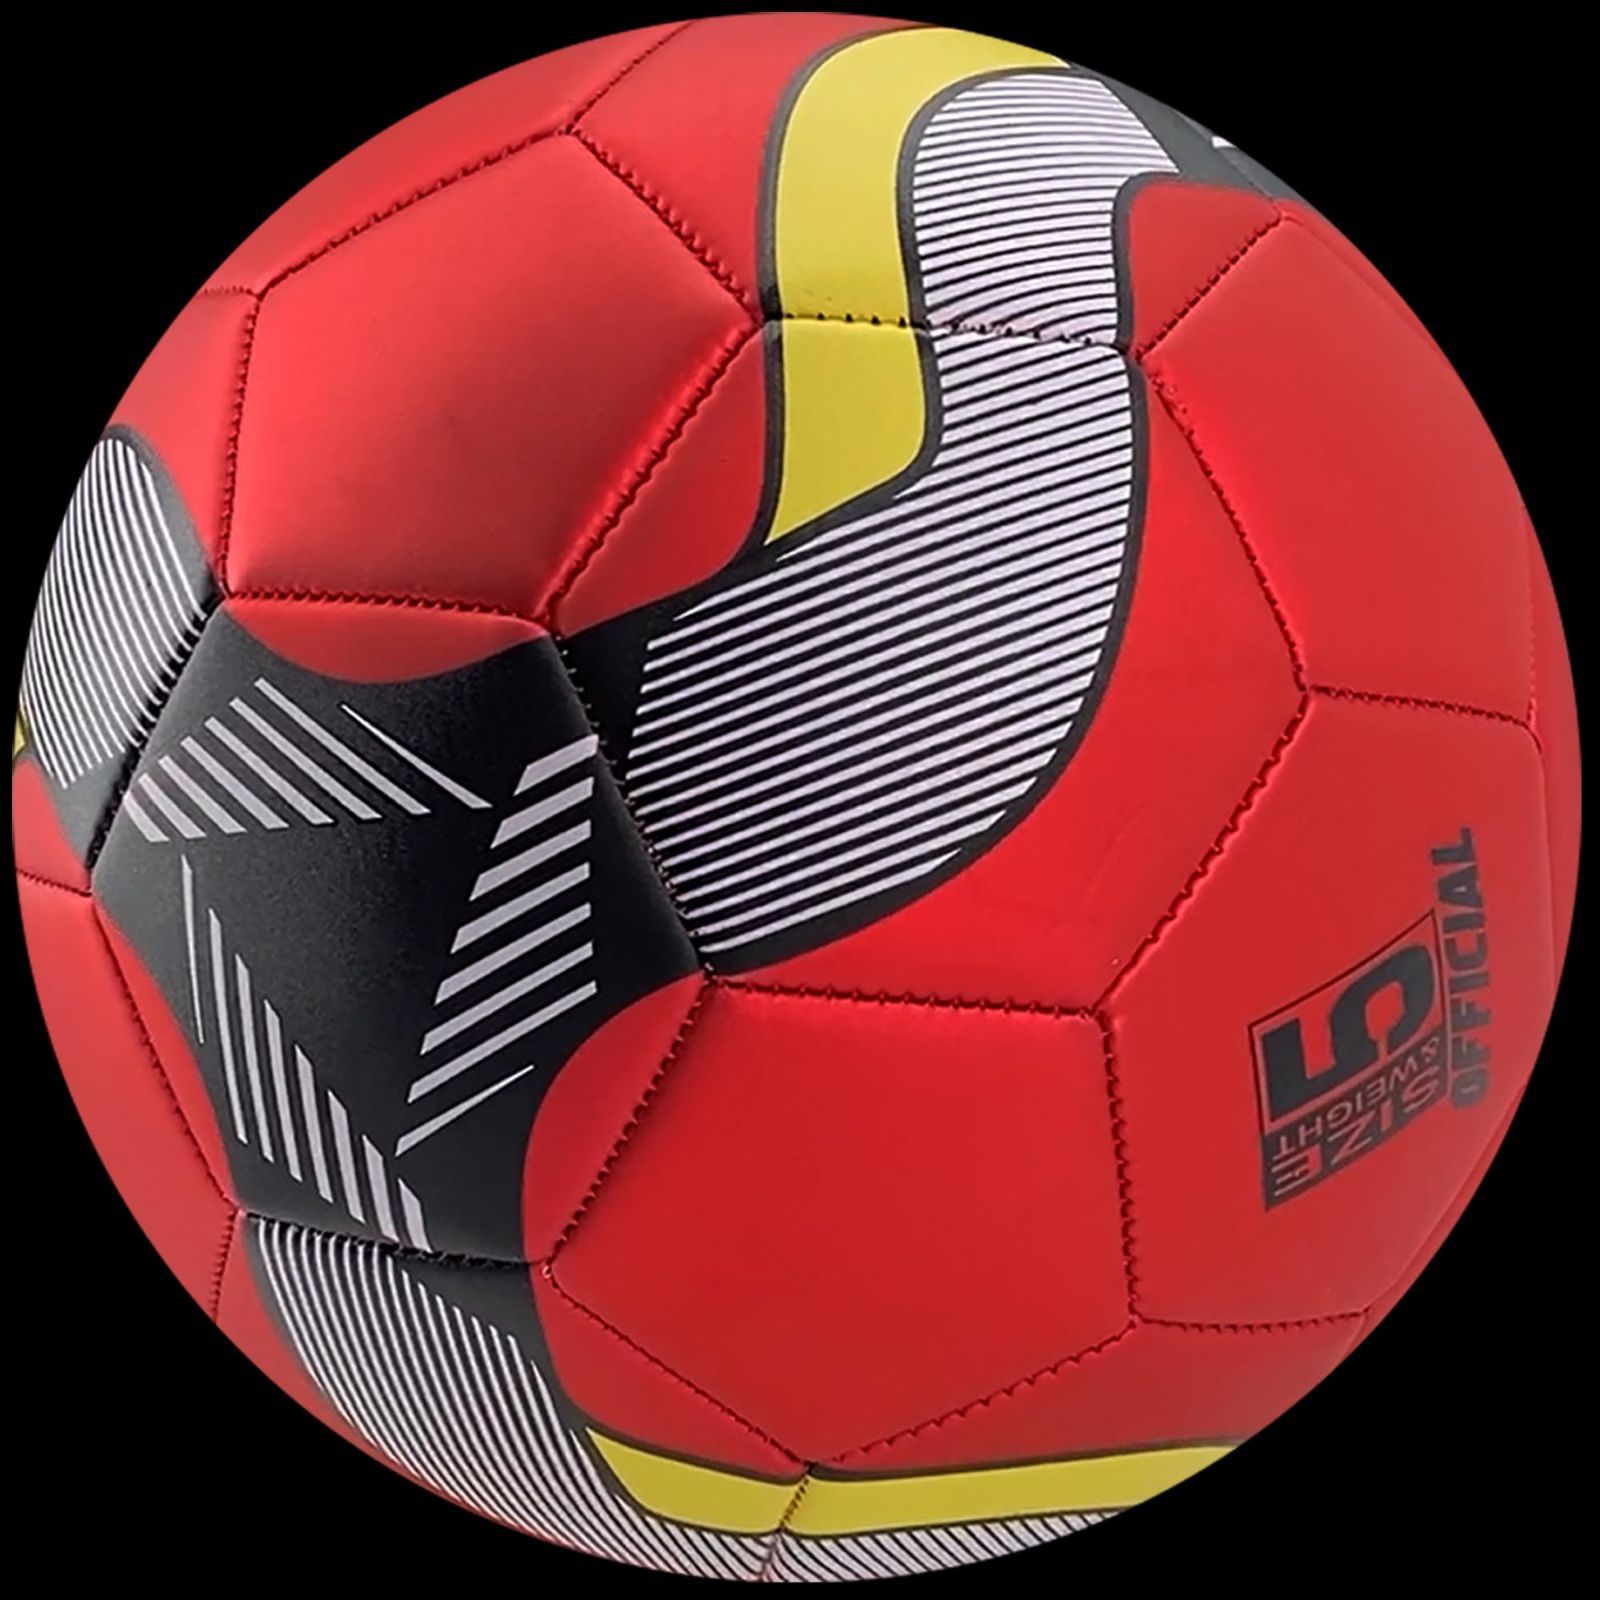 Senston サッカーボール 5号球 き-トレーニング試合サッカー大人と青少年サッカーポンプ付